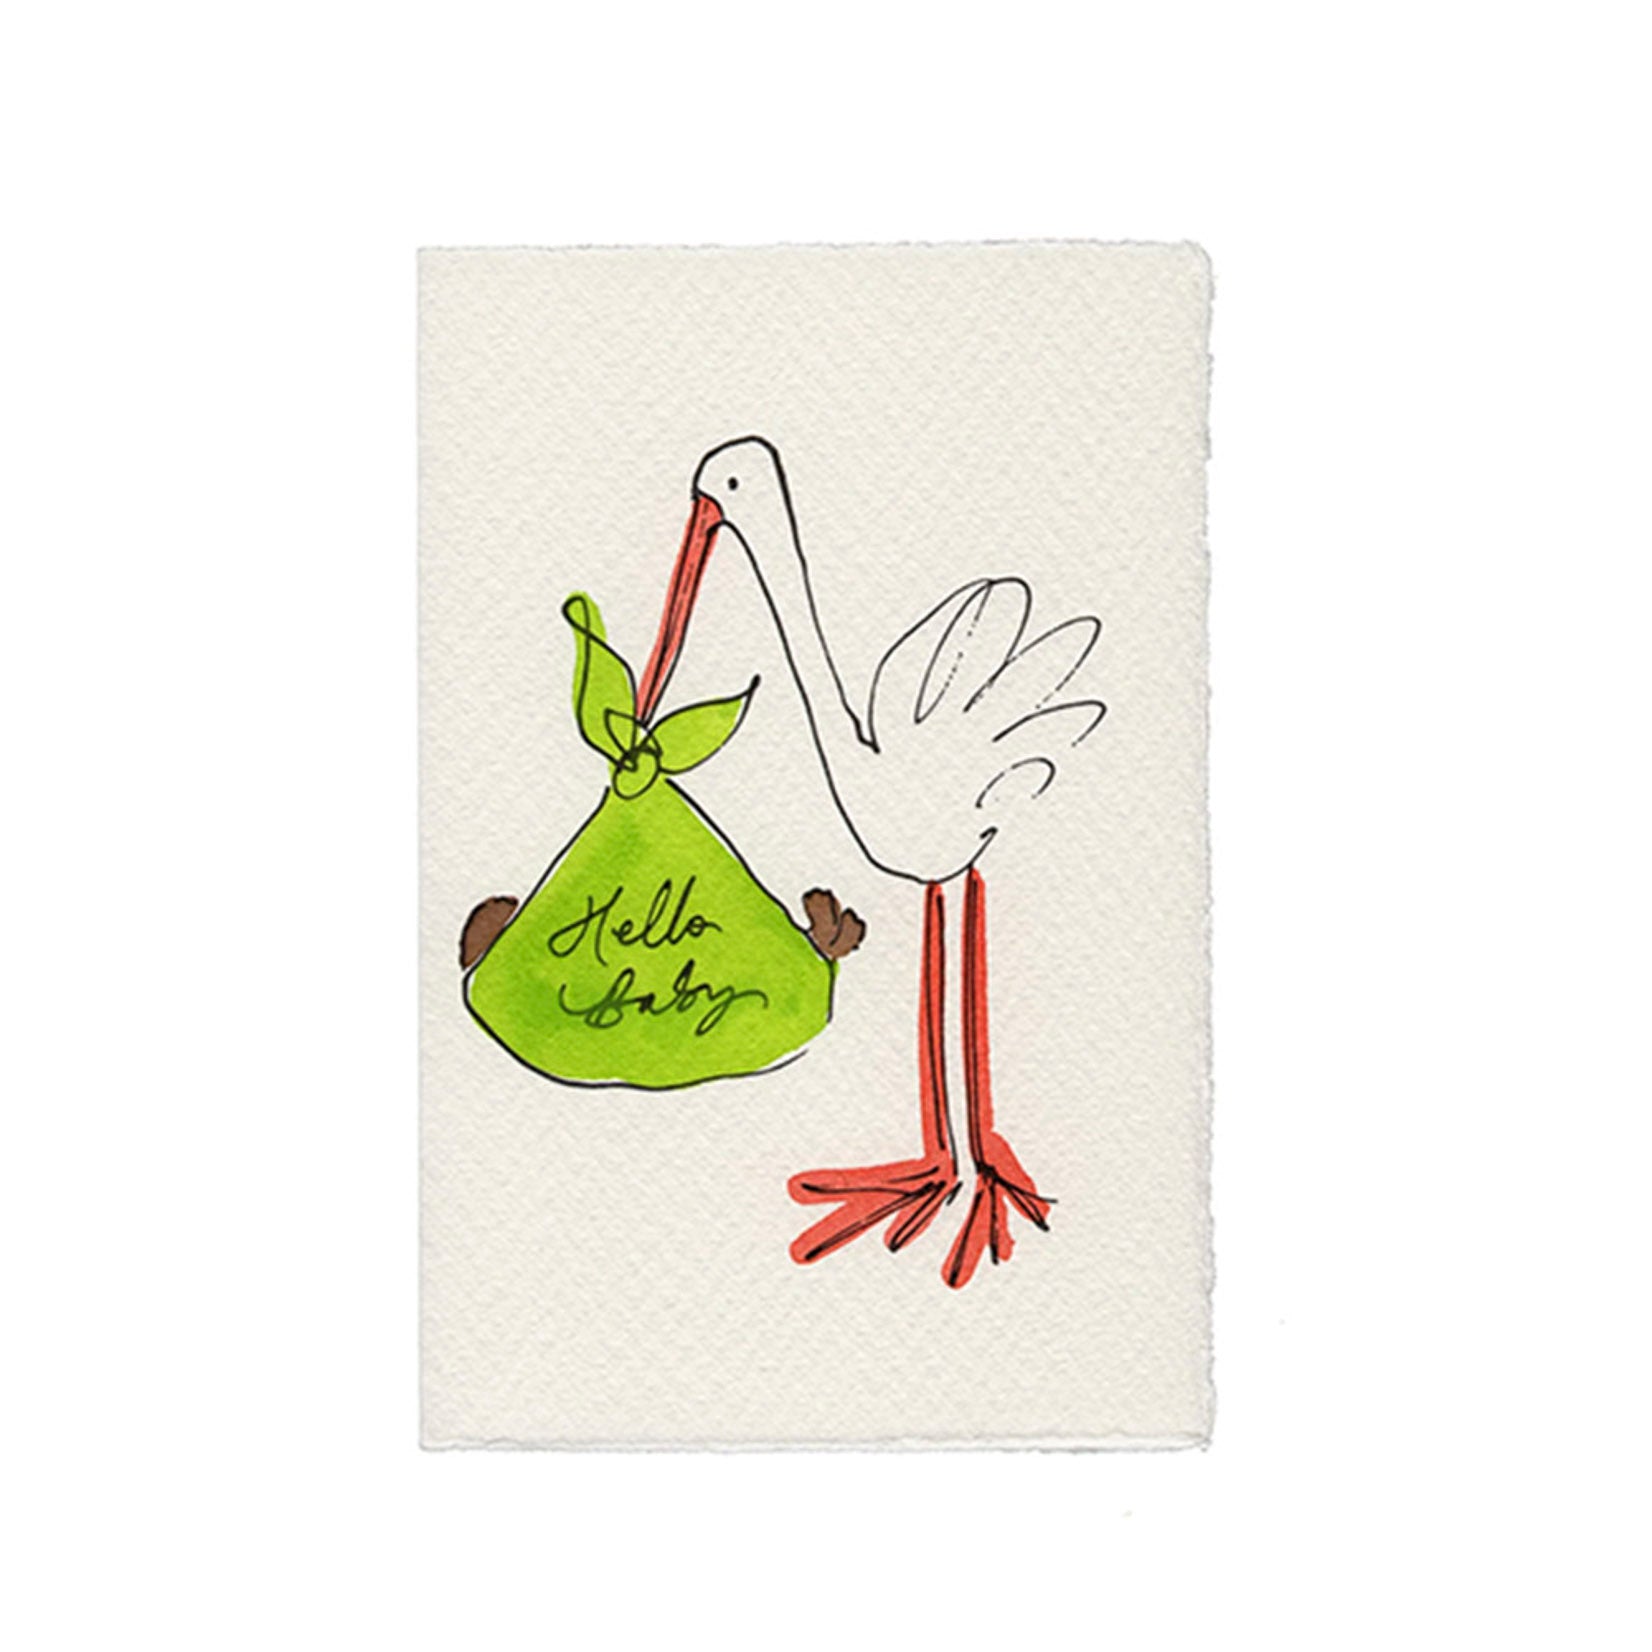 Storch mit Baby im Tragetuch als schwarze Strichzeichnung, handkoloriert mit Aquarellfarben, gedruckt auf Büttenpapier